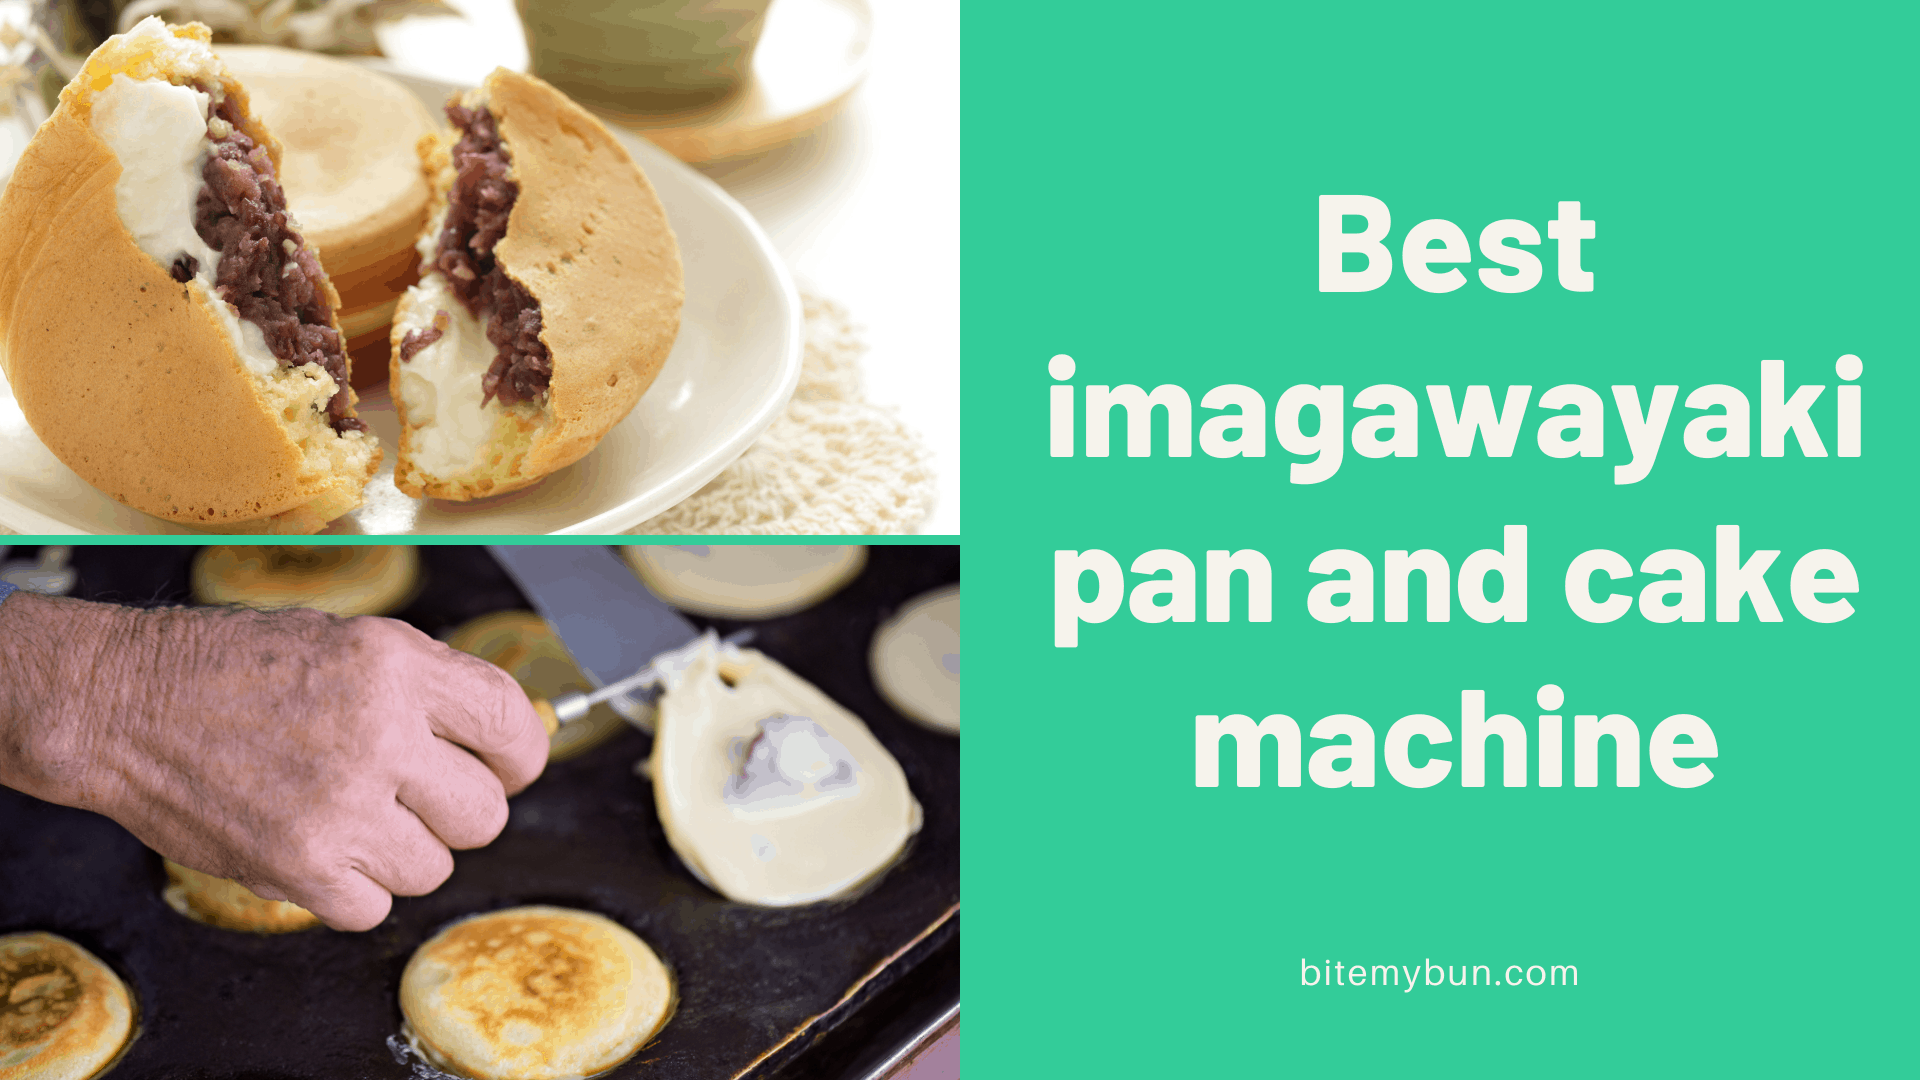 Mejor máquina de pan y pastel imagawayaki | 7 opciones principales revisadas